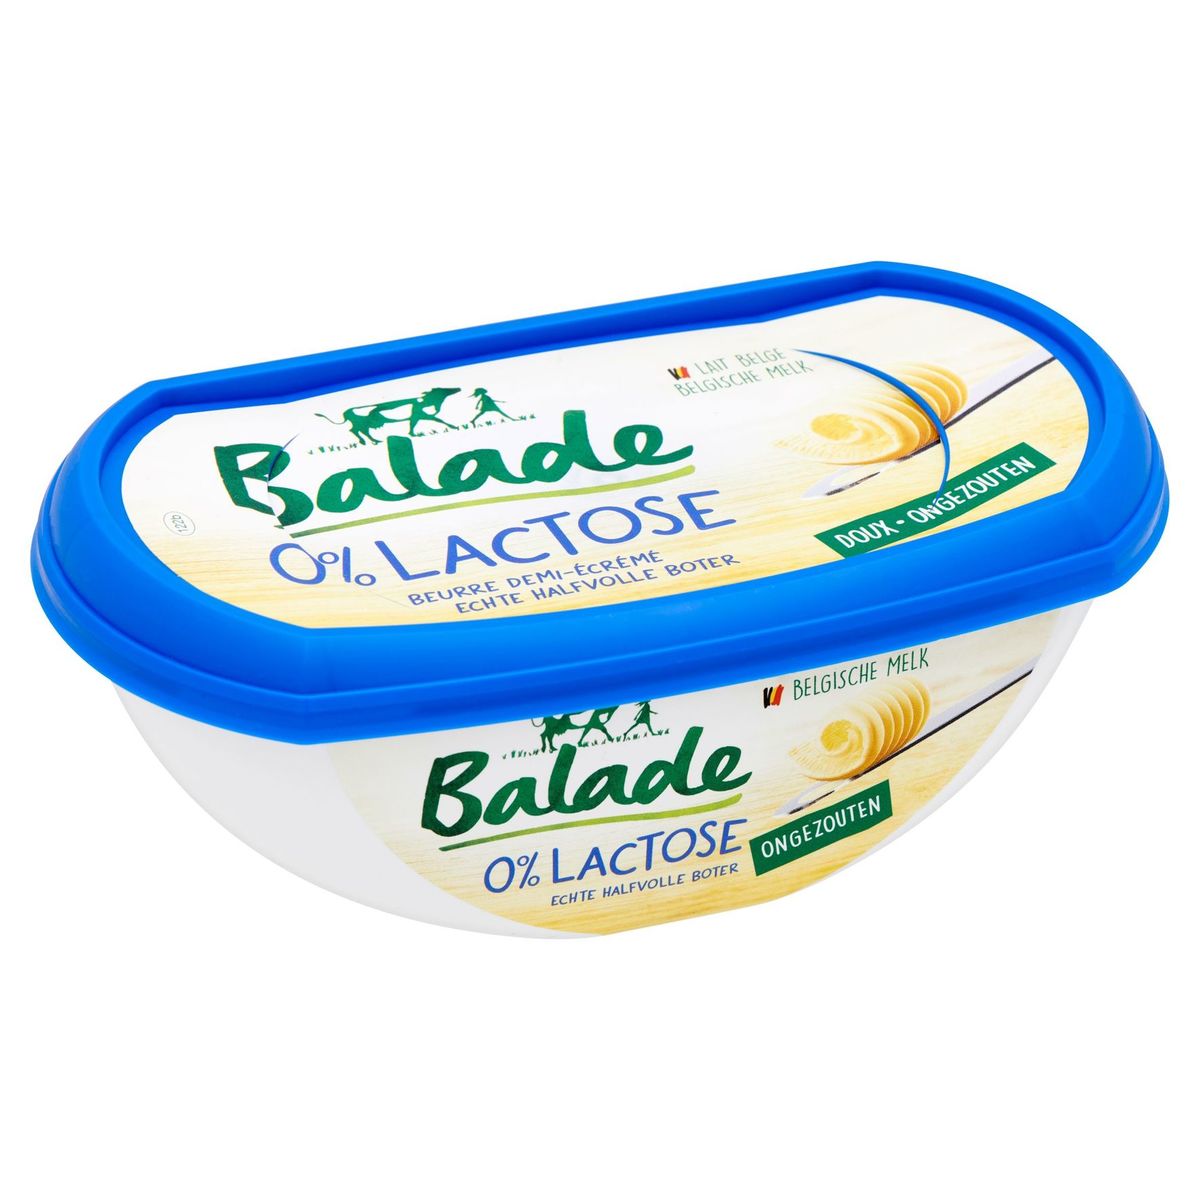 Balade 0% Lactose Echte Halfvolle Boter Ongezouten 250 g